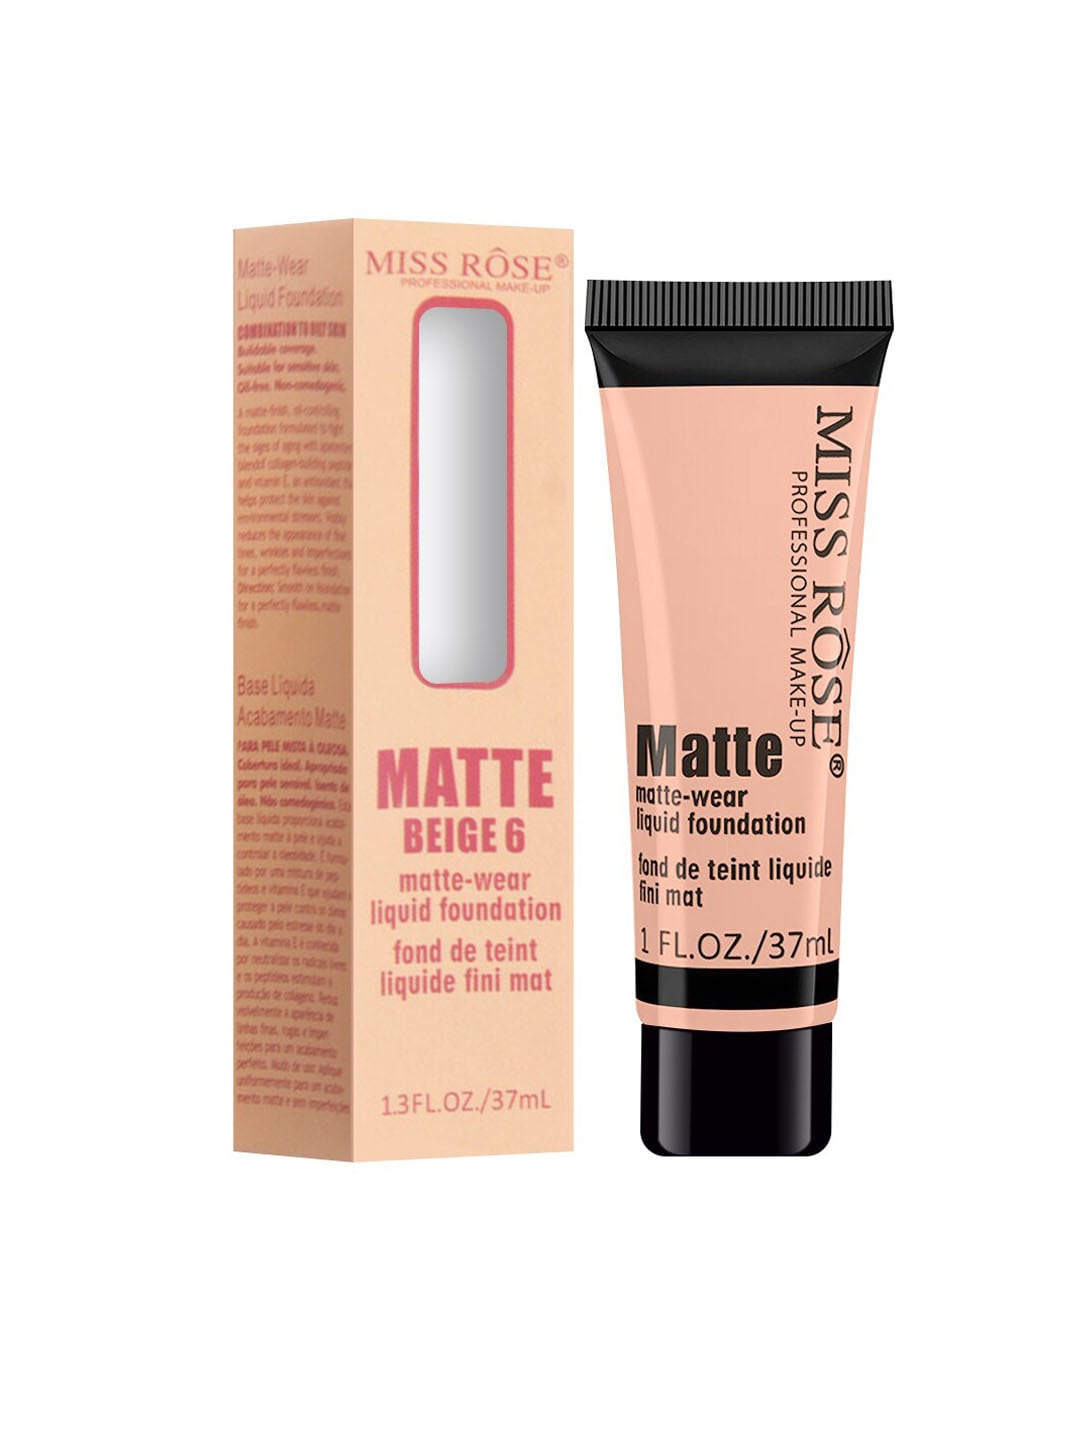 MISS ROSE Matte Finish Liquid Foundation Tube Beige 06 - 37 ml Price in India